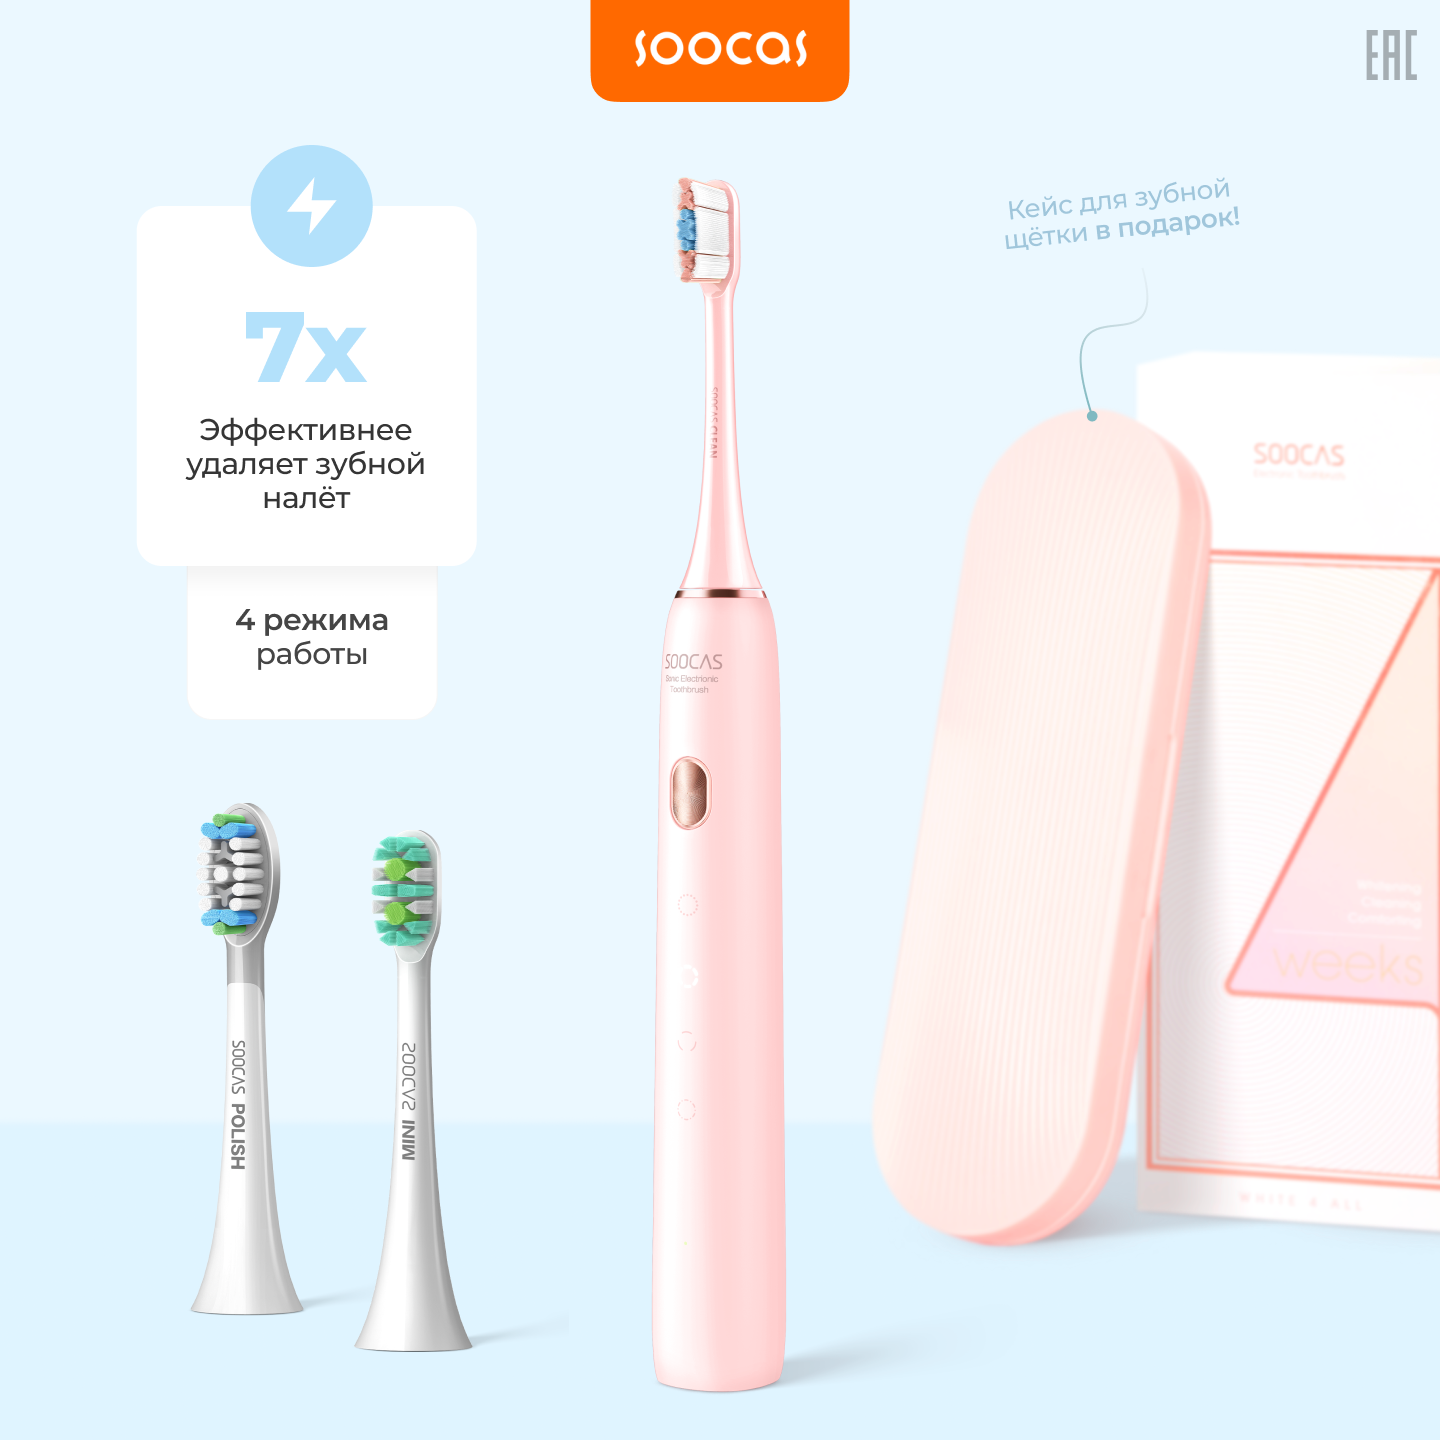 Электрическая зубная щетка Soocas X3U, Ростест, С футляром,три насадки,розовый